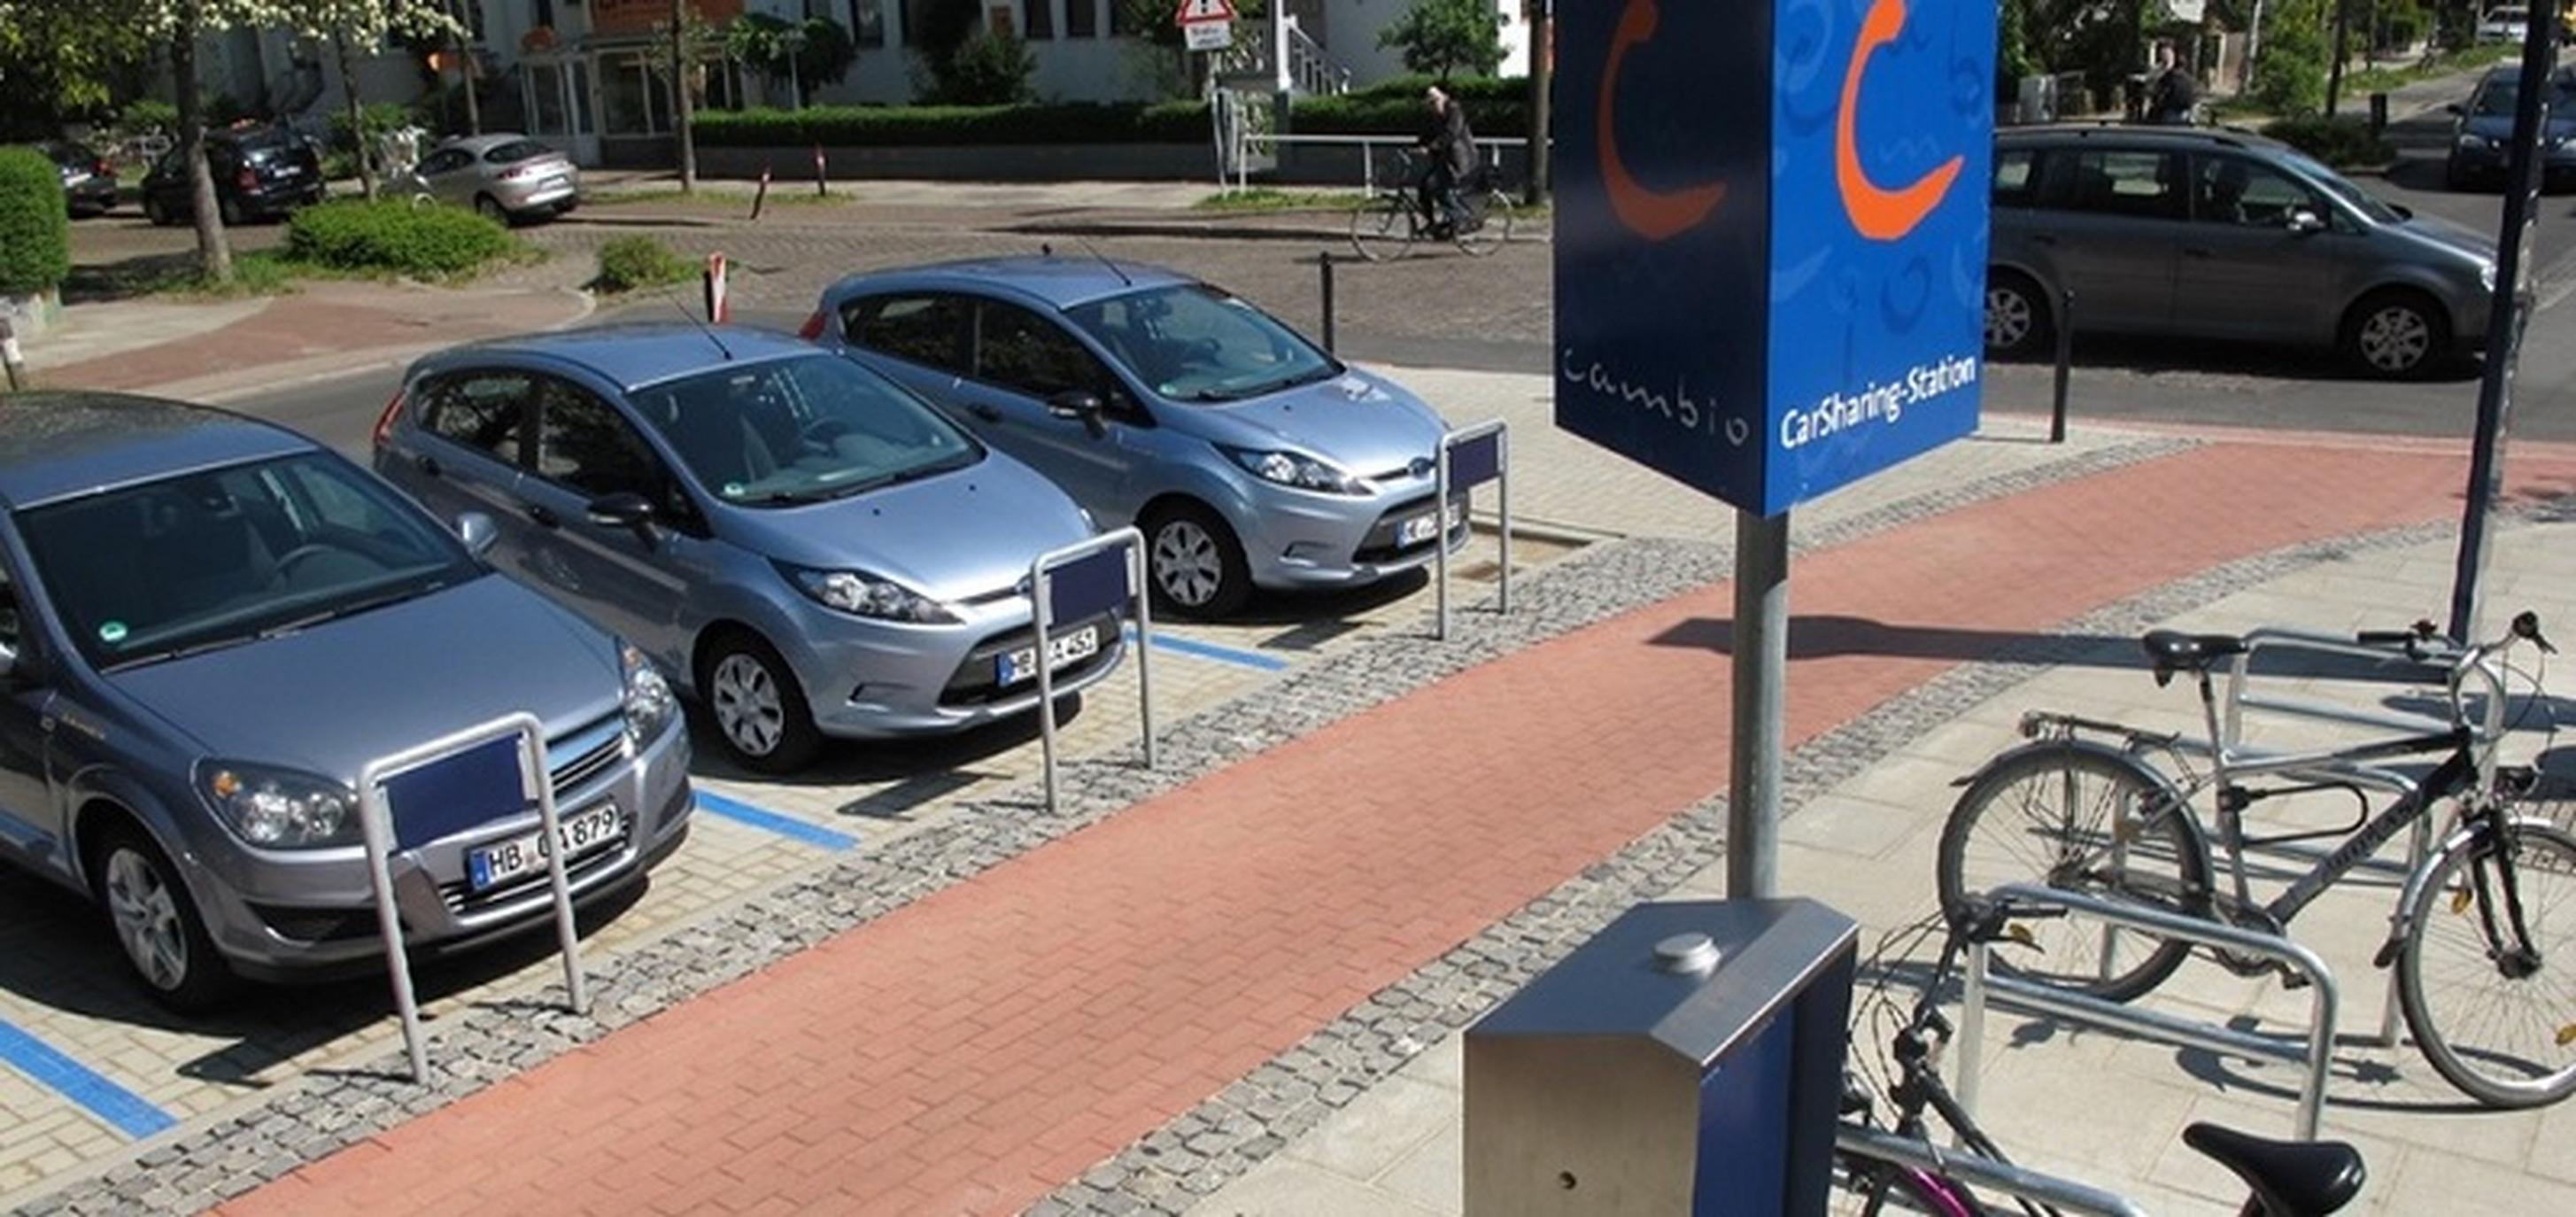 Bremen mobility hub (Image credit: mobil.punkt)